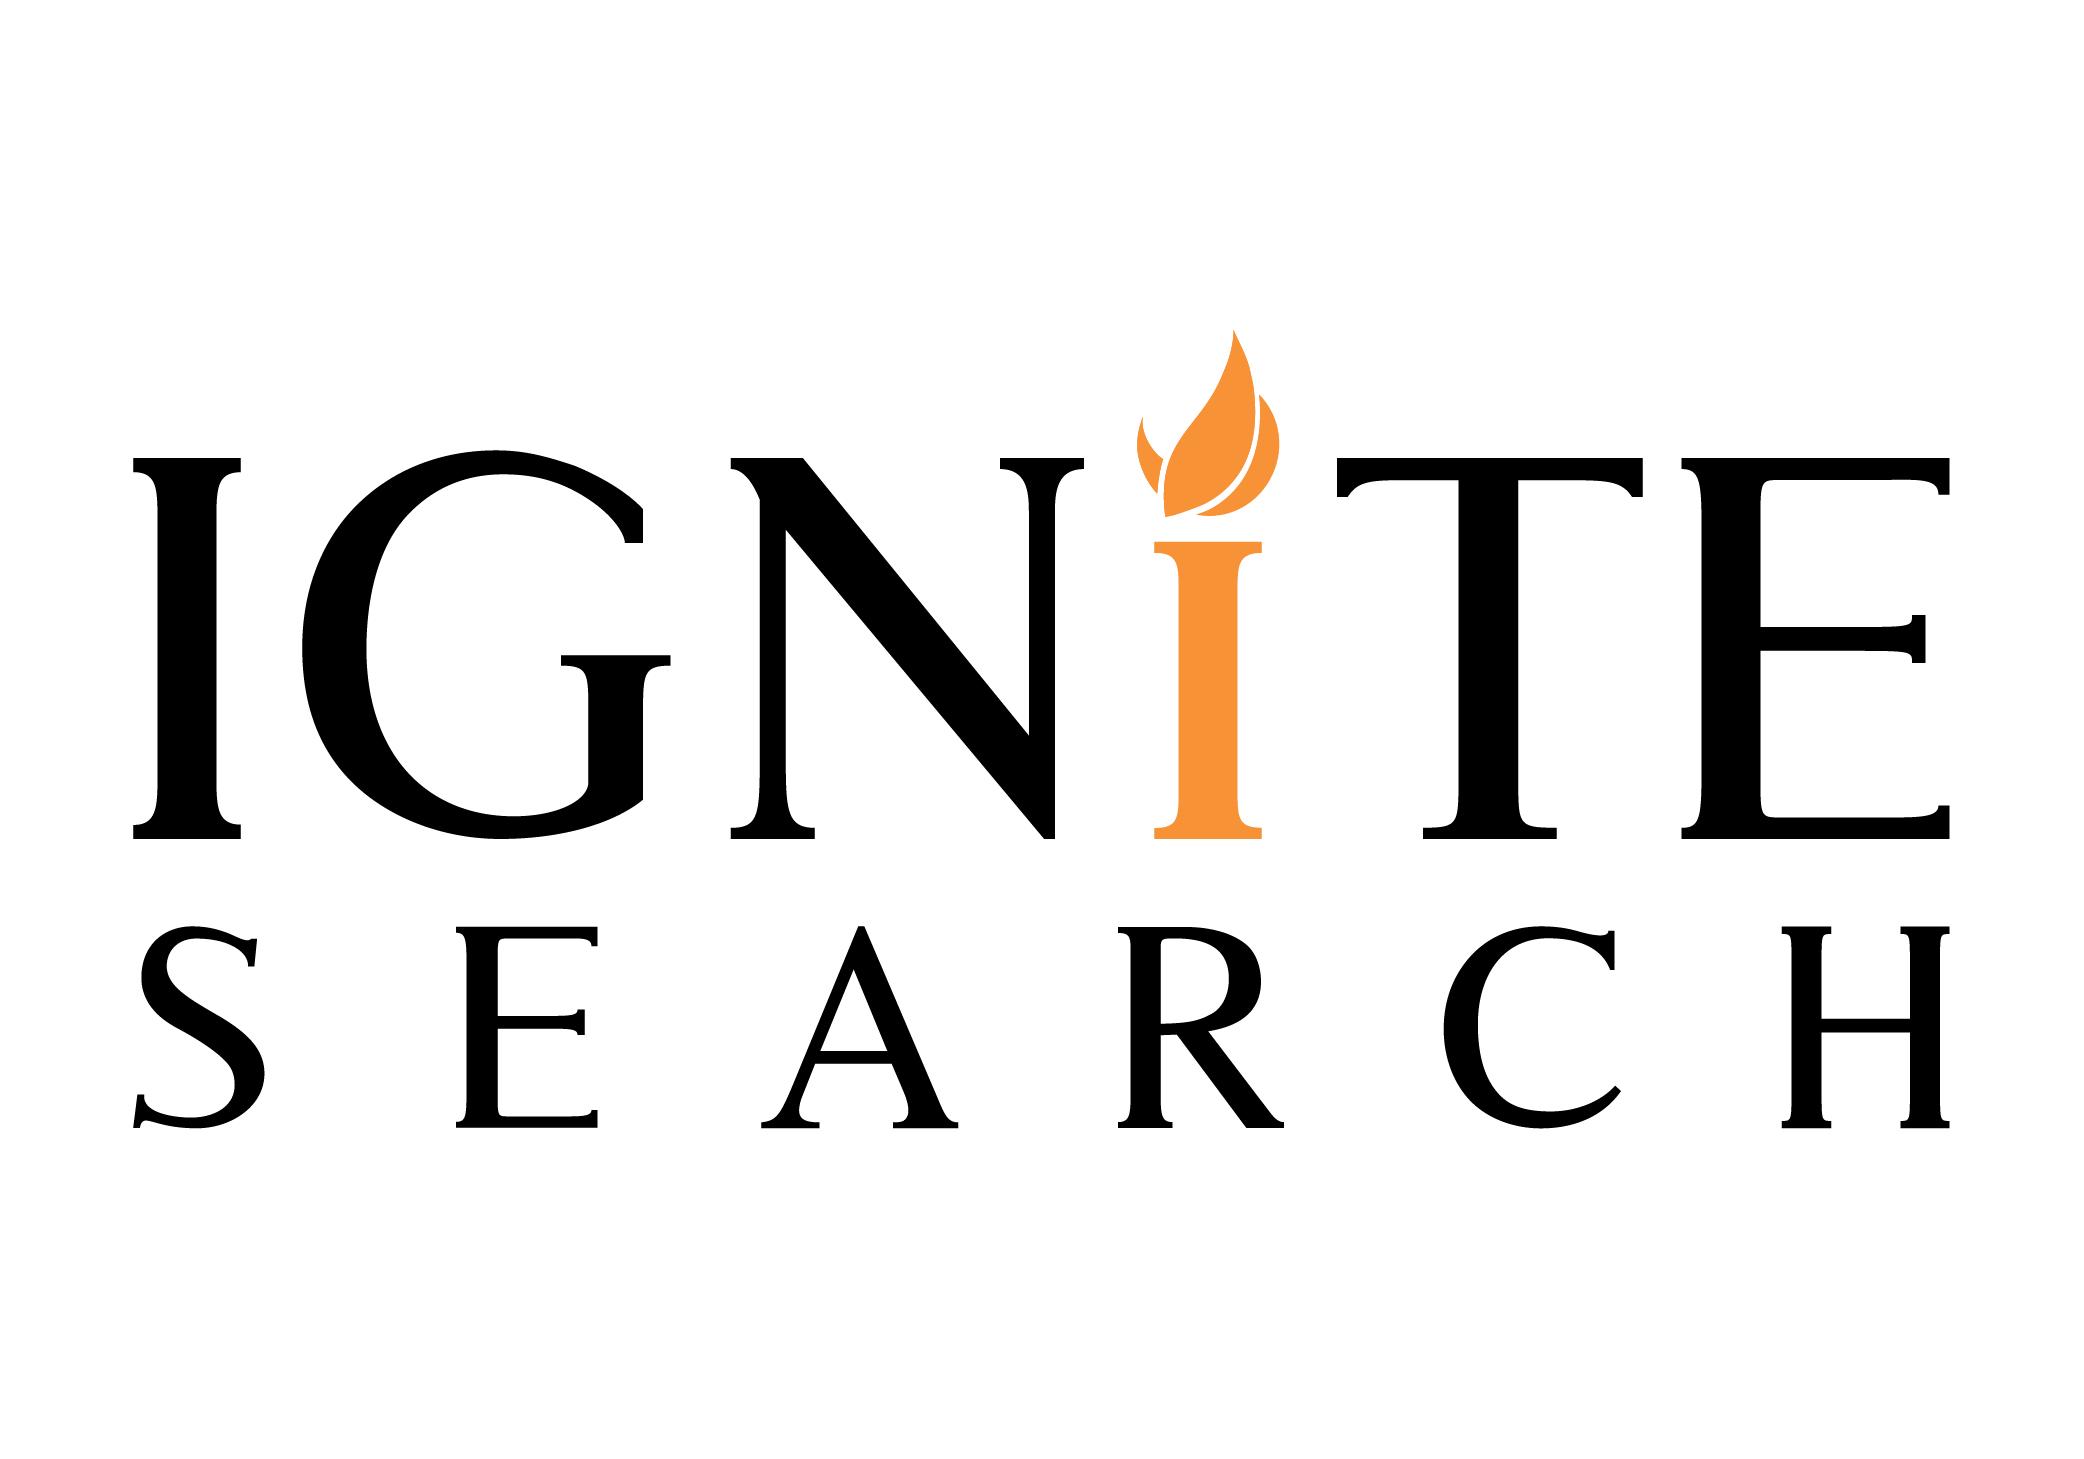 Ignite Search